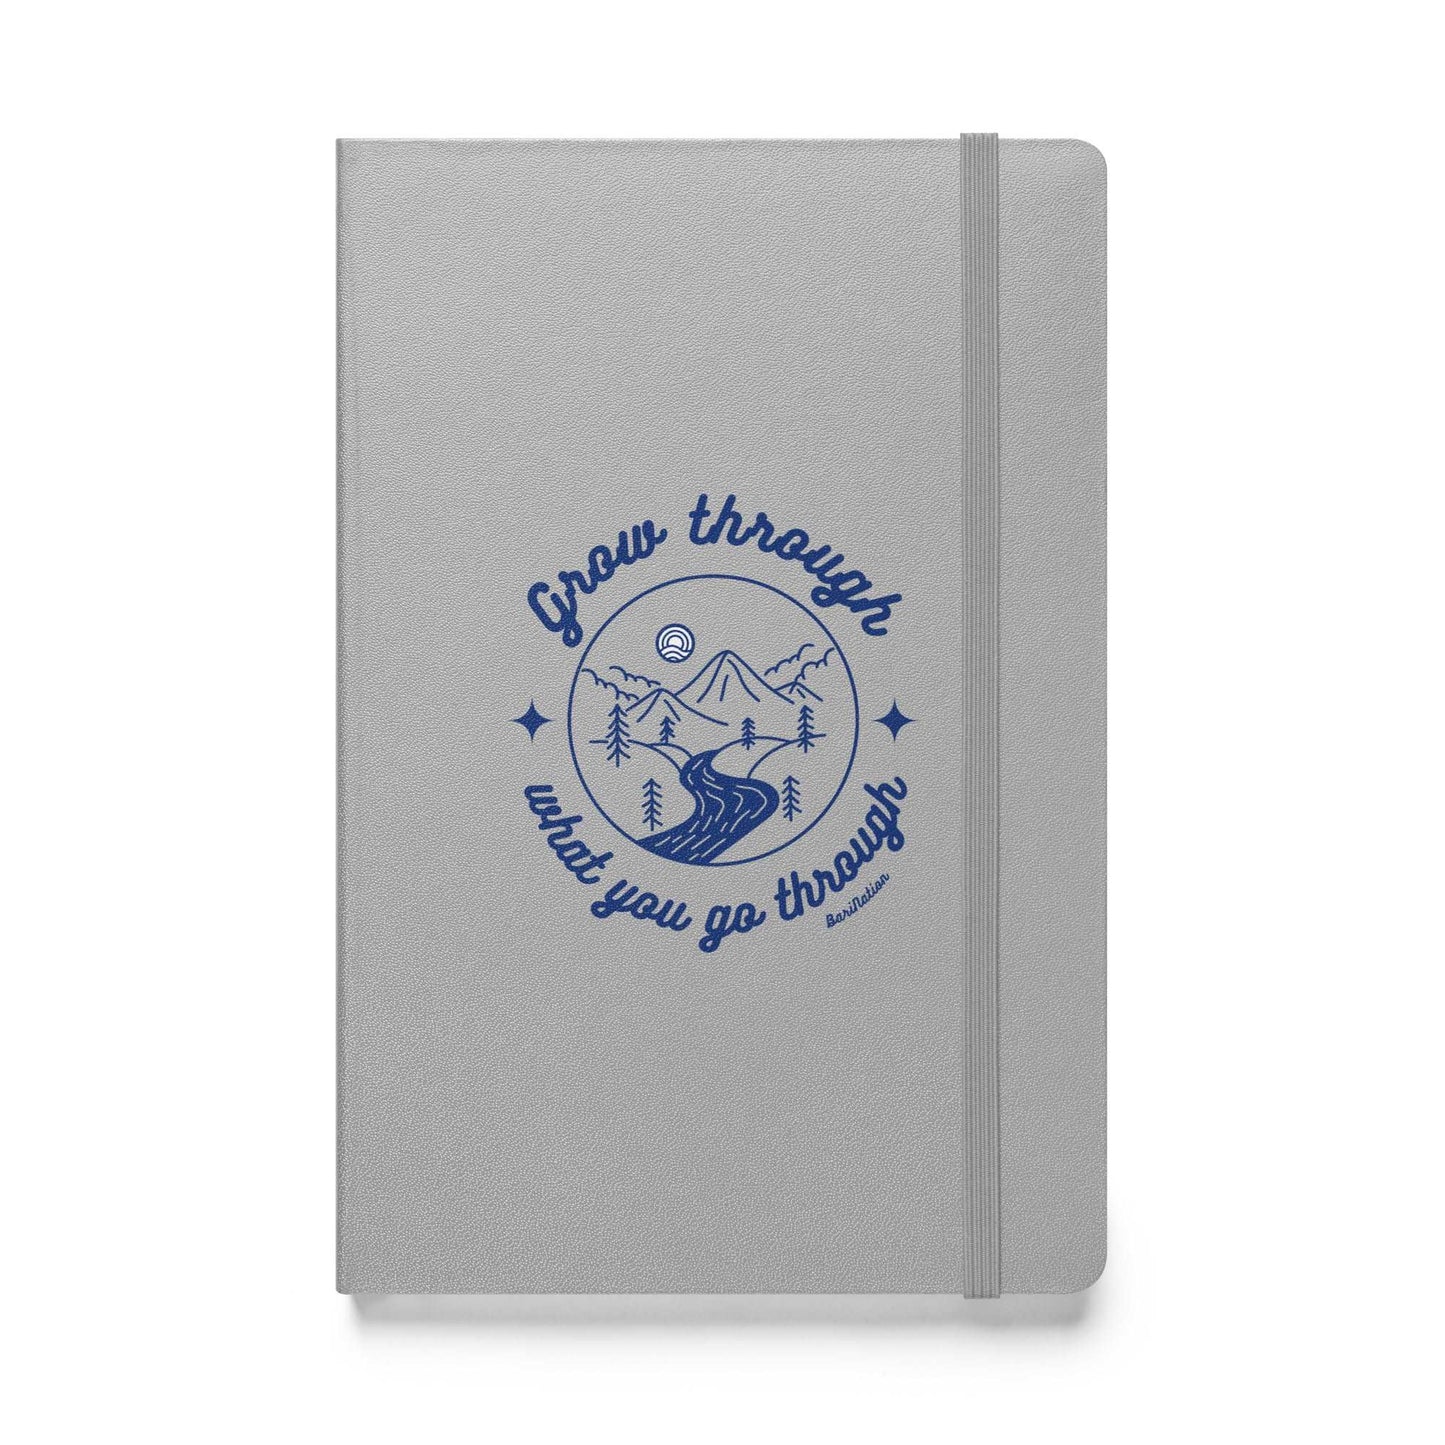 Grow Through What You Go Through - Hardcover Notebook